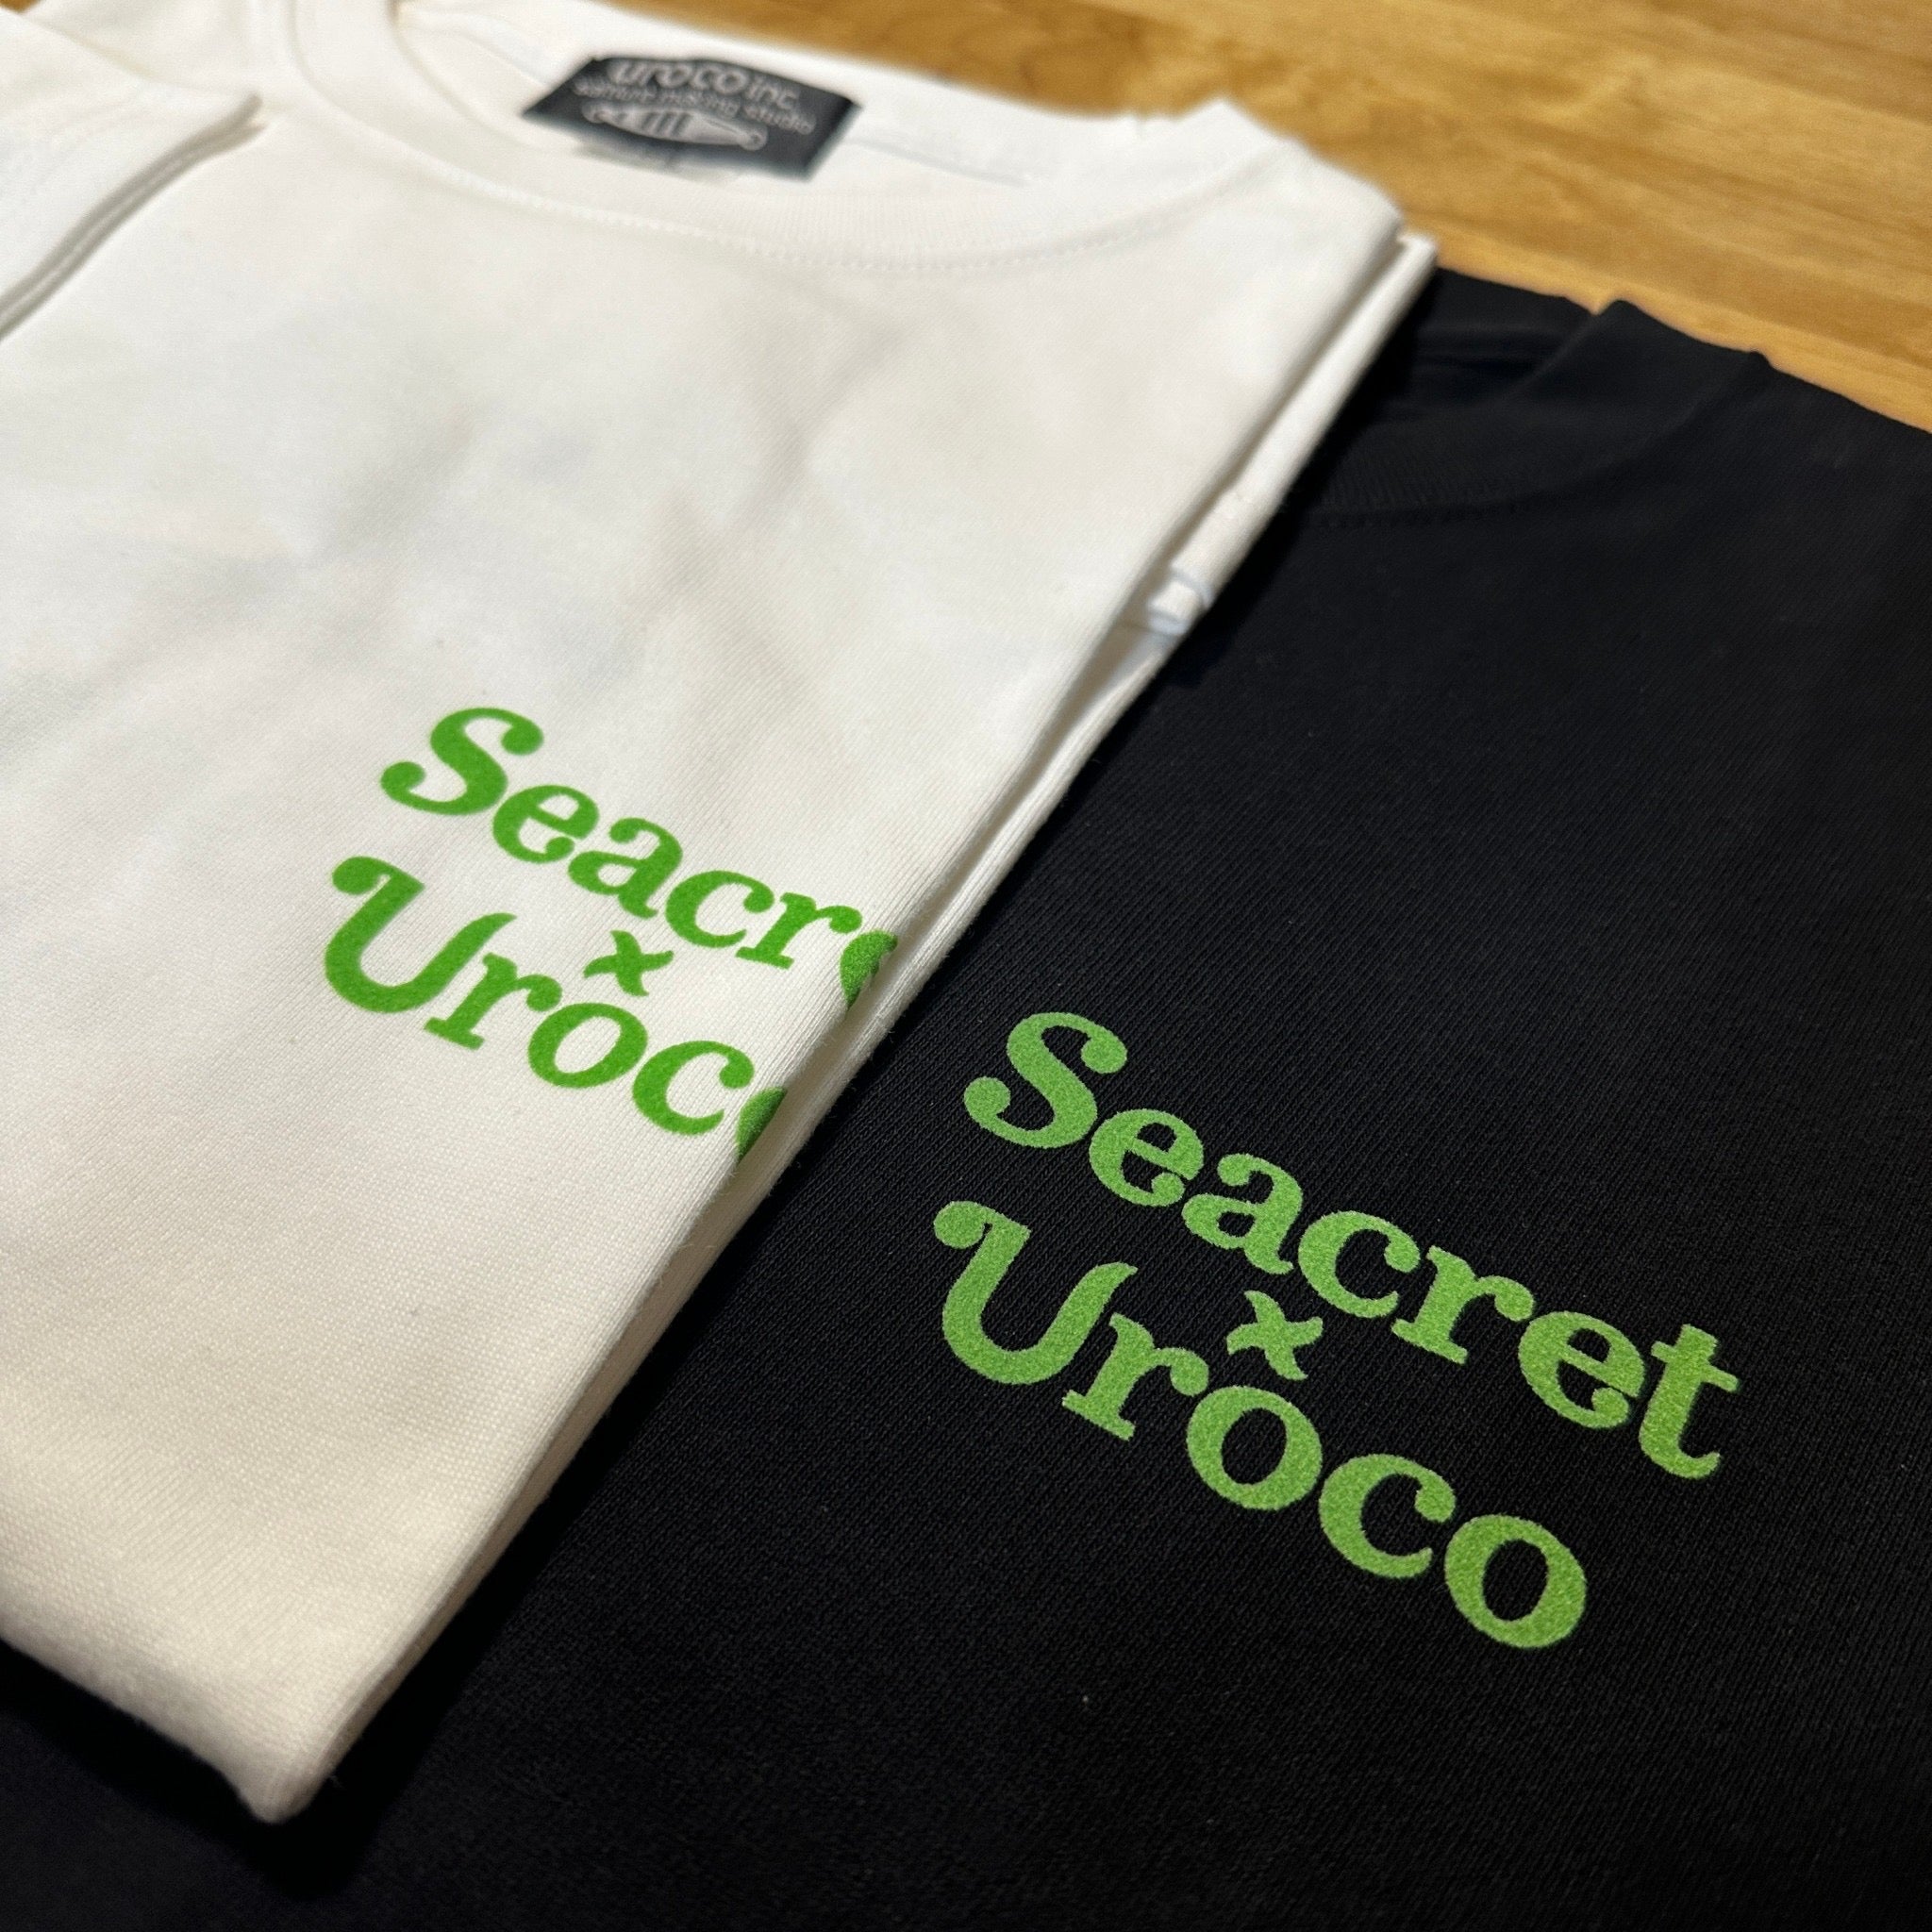 【予約商品】 Seacret uroco コラボ Tシャツ シークレット ウロコ